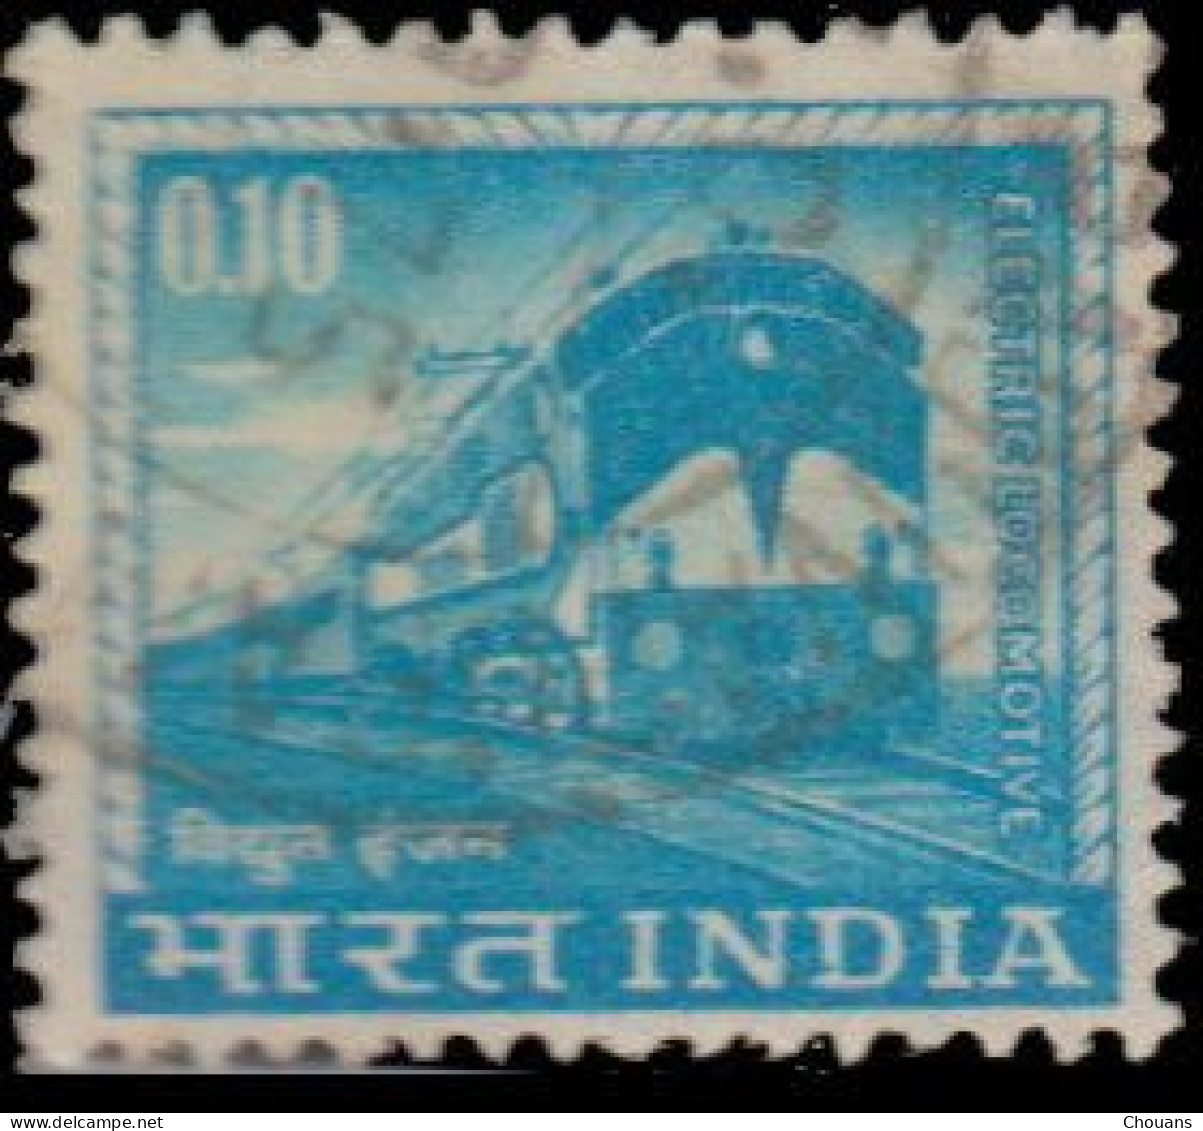 Inde 1965. ~ YT 192 (par 6) - Locomotive électrique - Ongebruikt